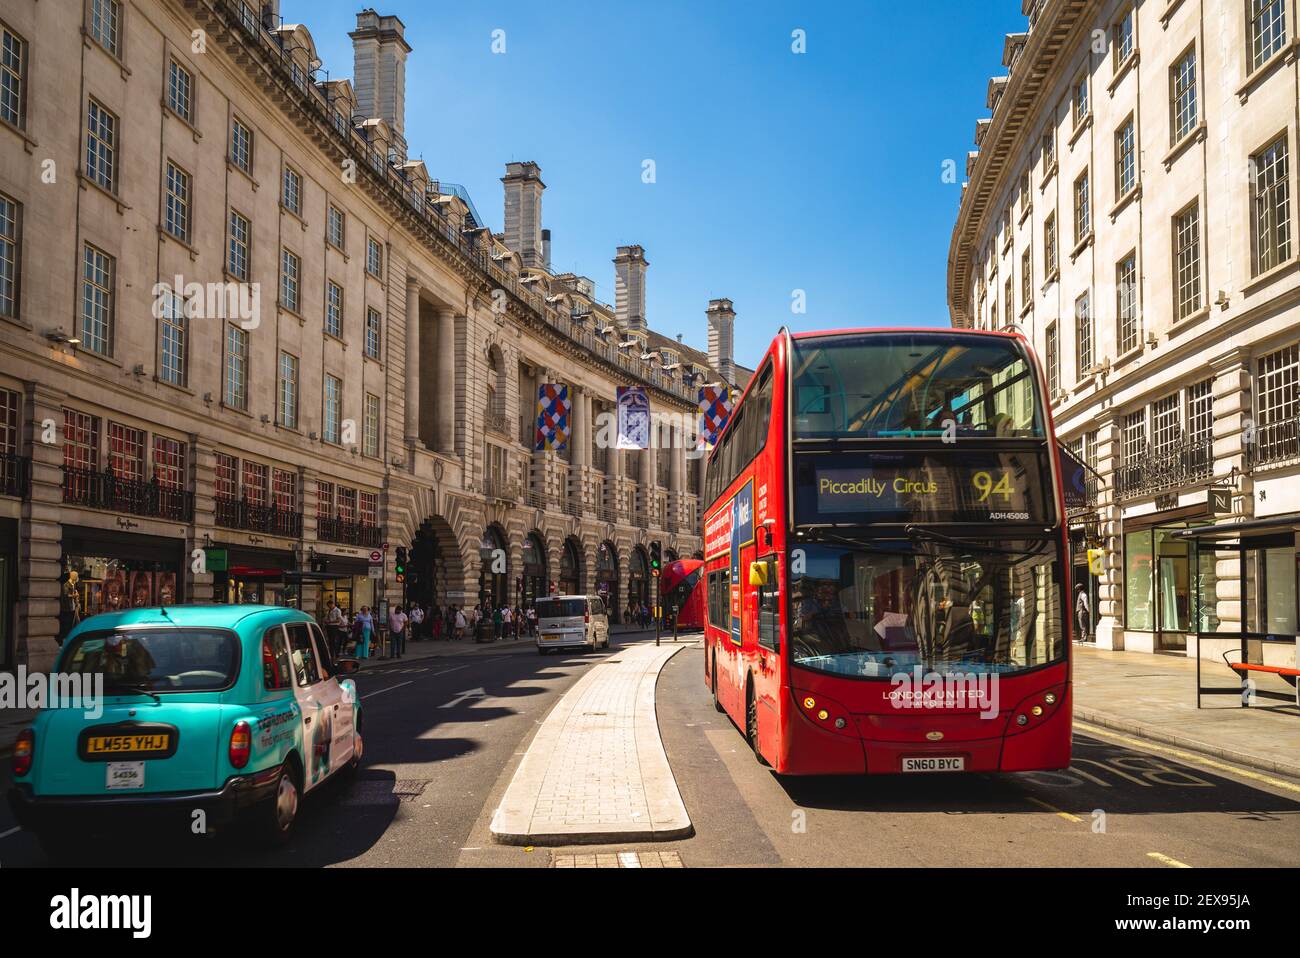 29 giugno 2018: scena stradale vicino al circo di piccadilly, un incrocio stradale e spazio pubblico nella città di Westminster, londra, inghilterra, regno unito. E' stato costruito Foto Stock